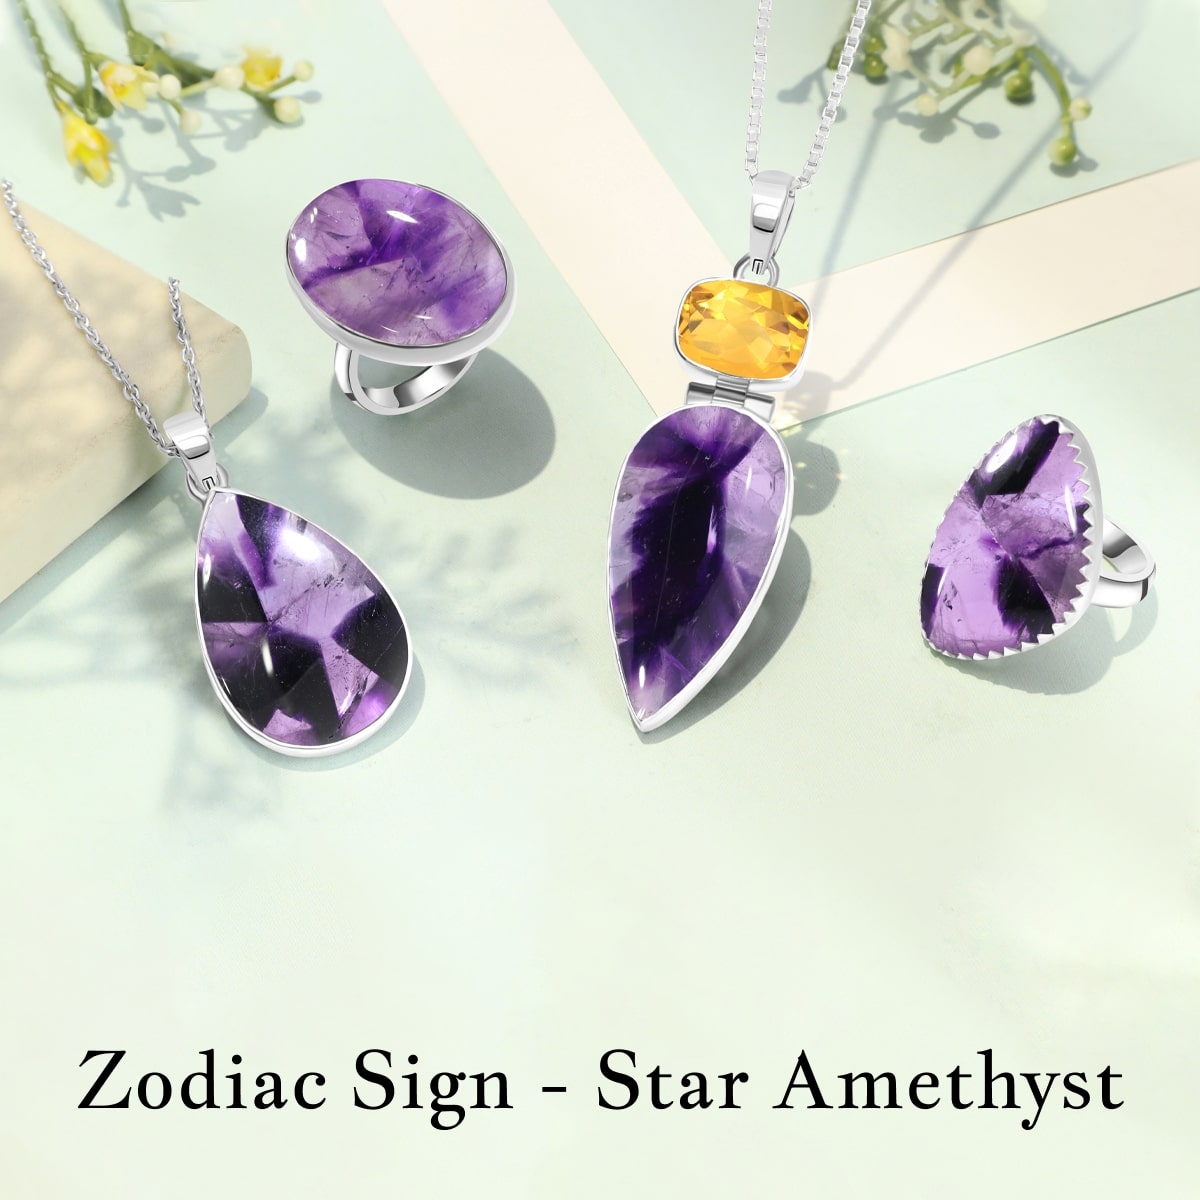 Star Amethyst Zodiac sign